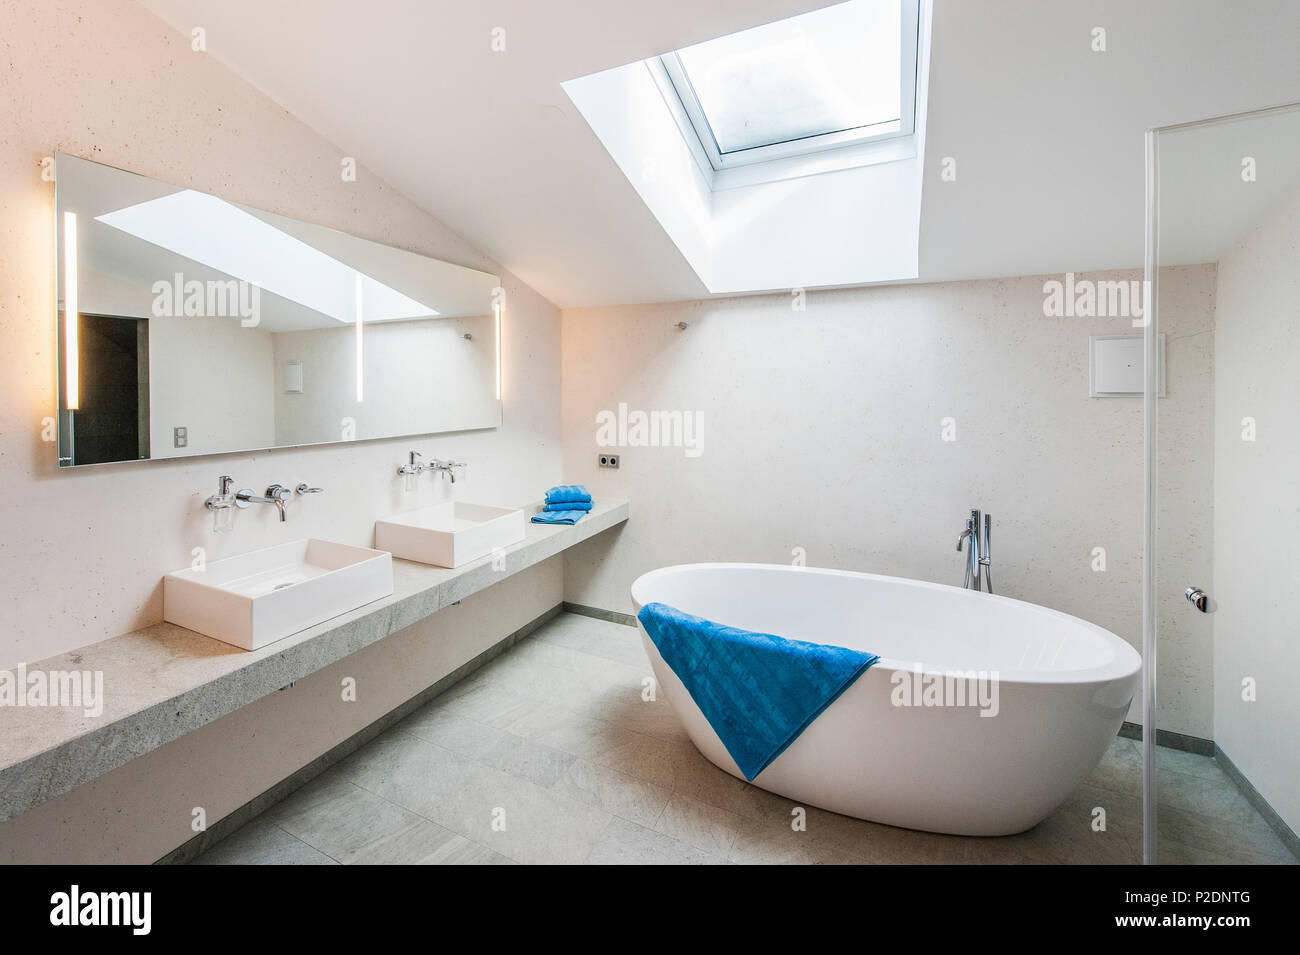 Salle de bains dans un penthouse dans un style alpin moderne, Kitzbühel, Tyrol, Autriche, Europe Banque D'Images